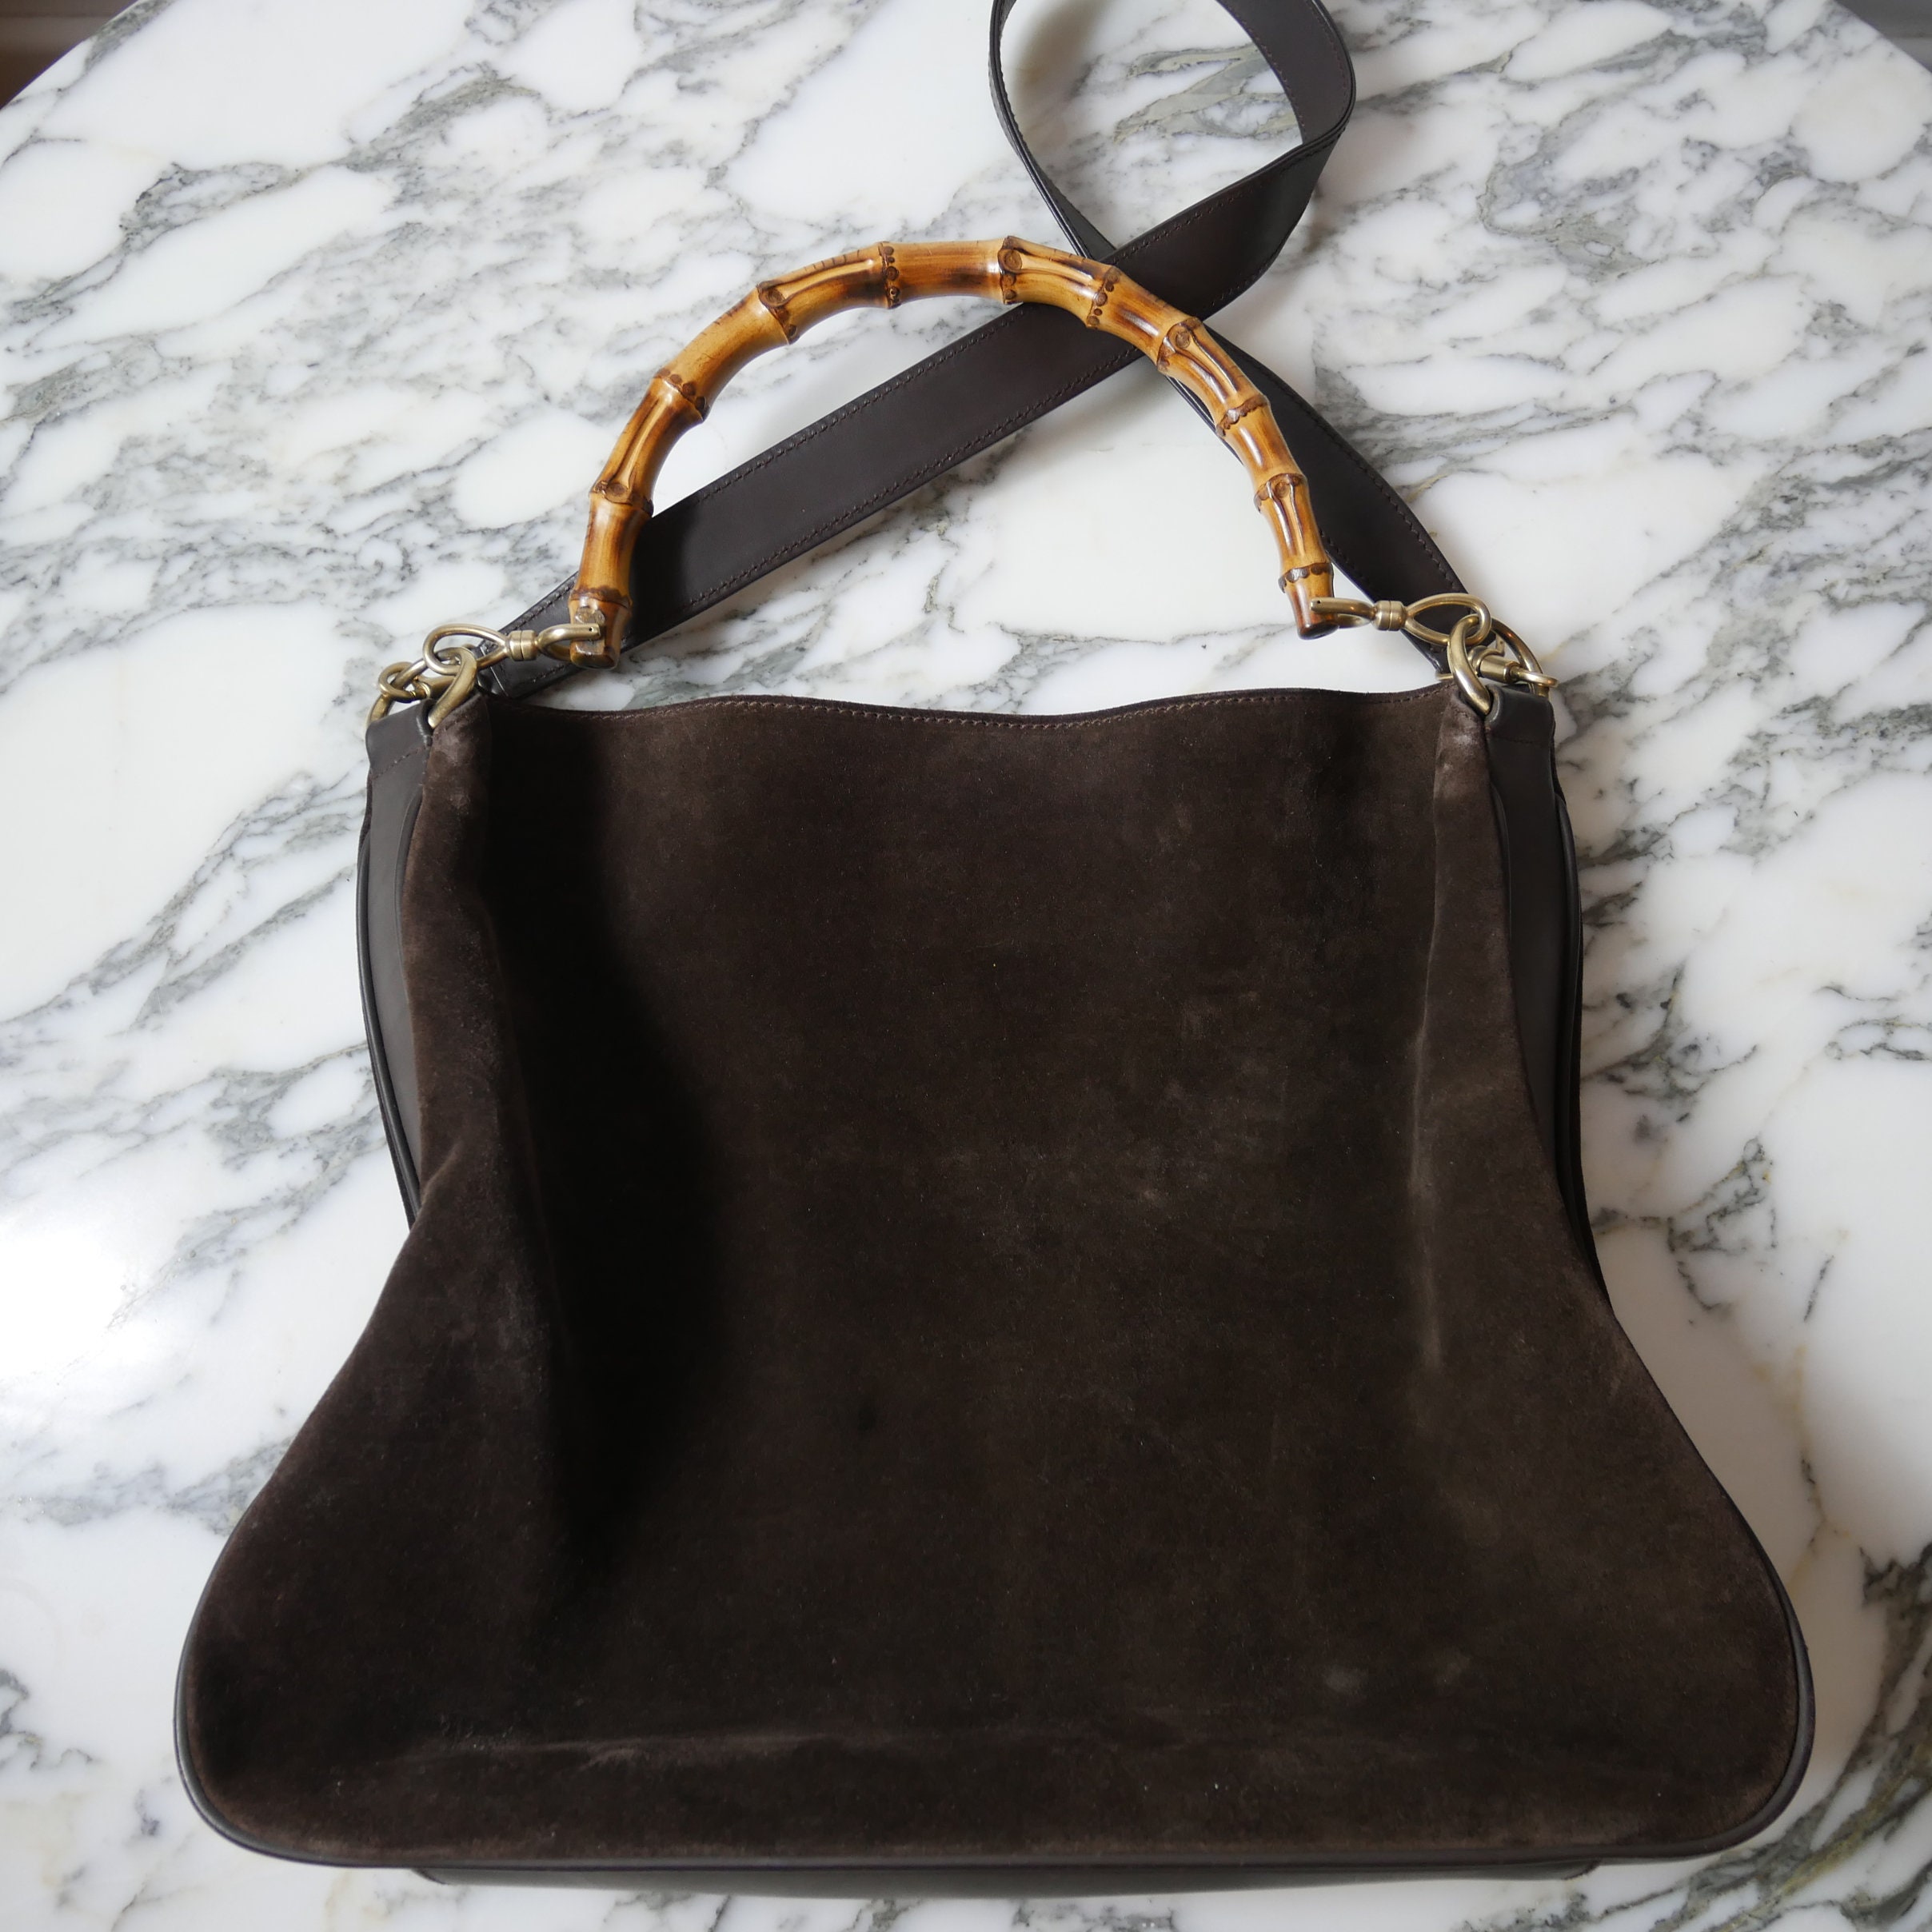 Gucci, Bags, Vintage Gucci Speedy Suede Handbag